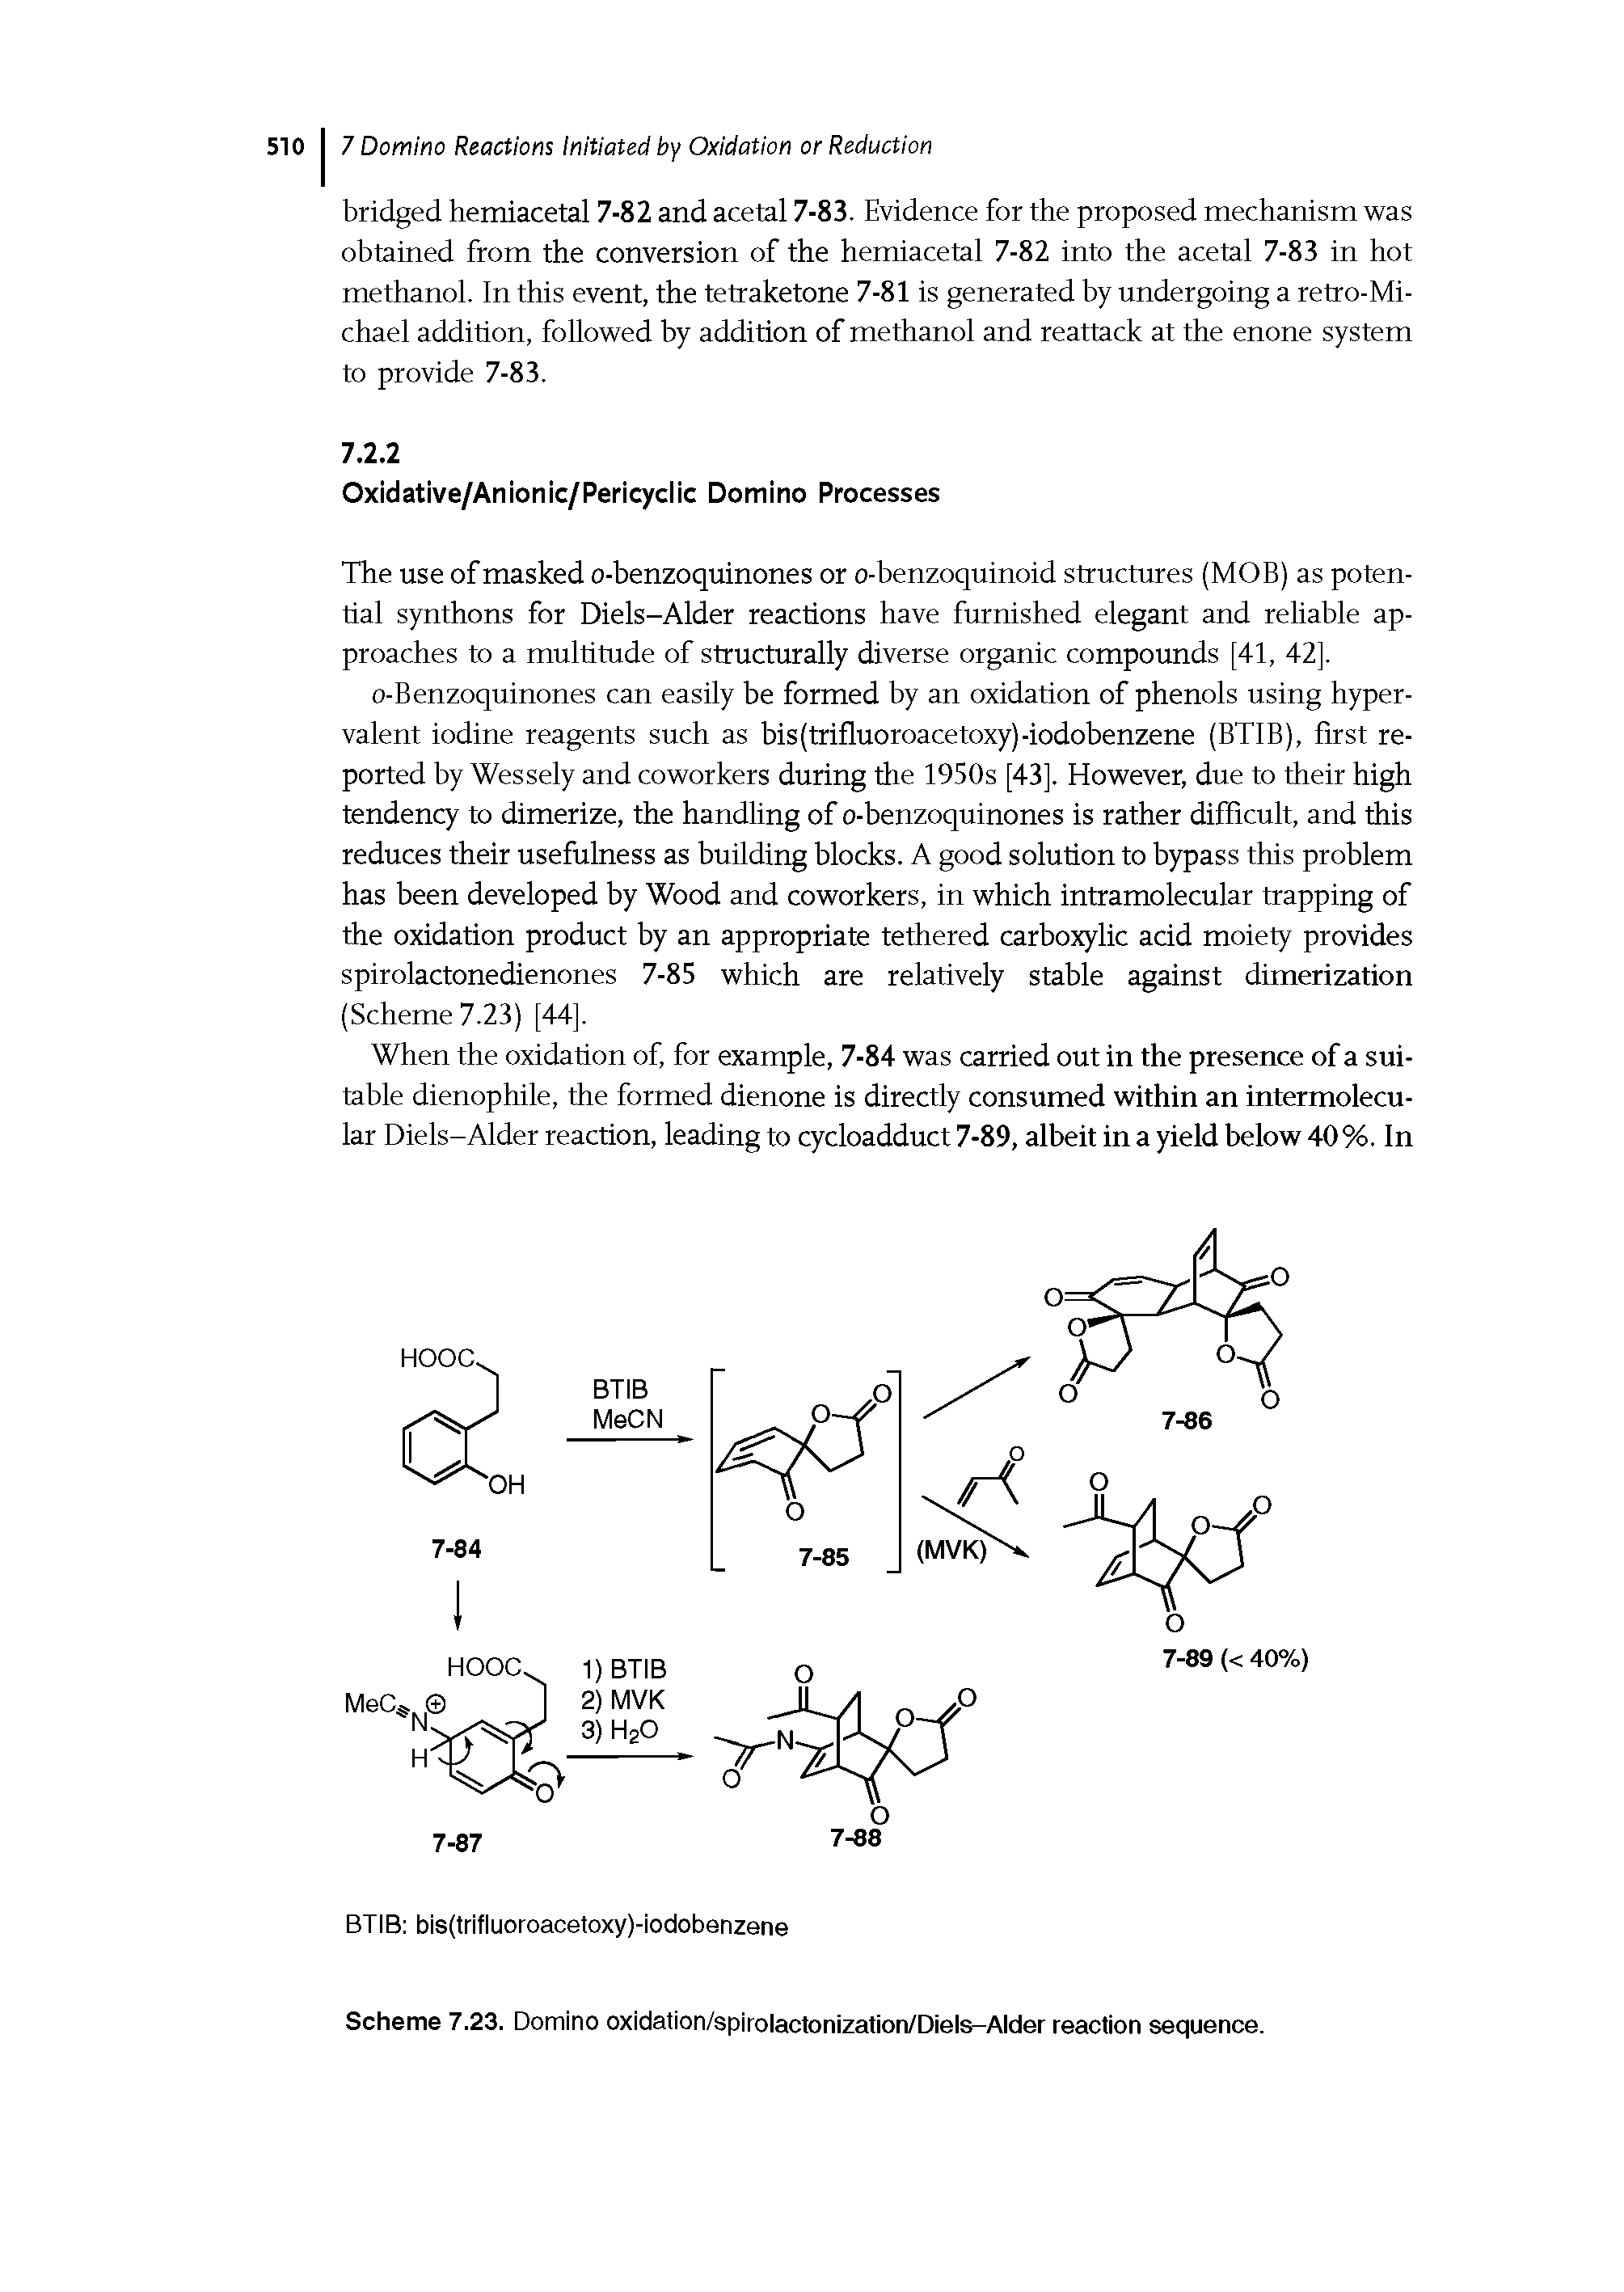 Scheme 7.23. Domino oxidation/spirolactonization/Diels-Alder reaction sequence.